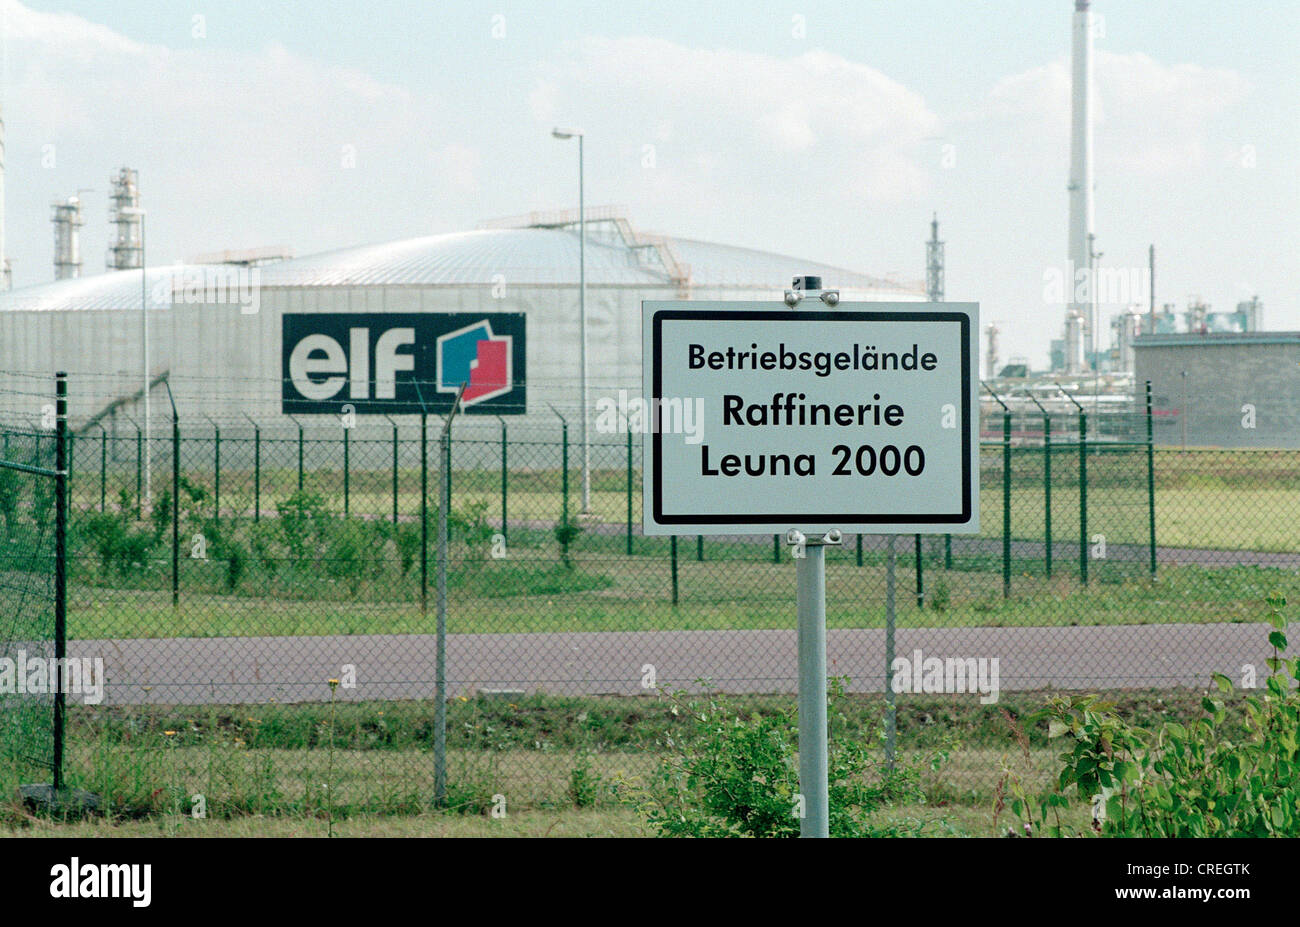 Raffinerie Elf de Leuna, Allemagne Banque D'Images